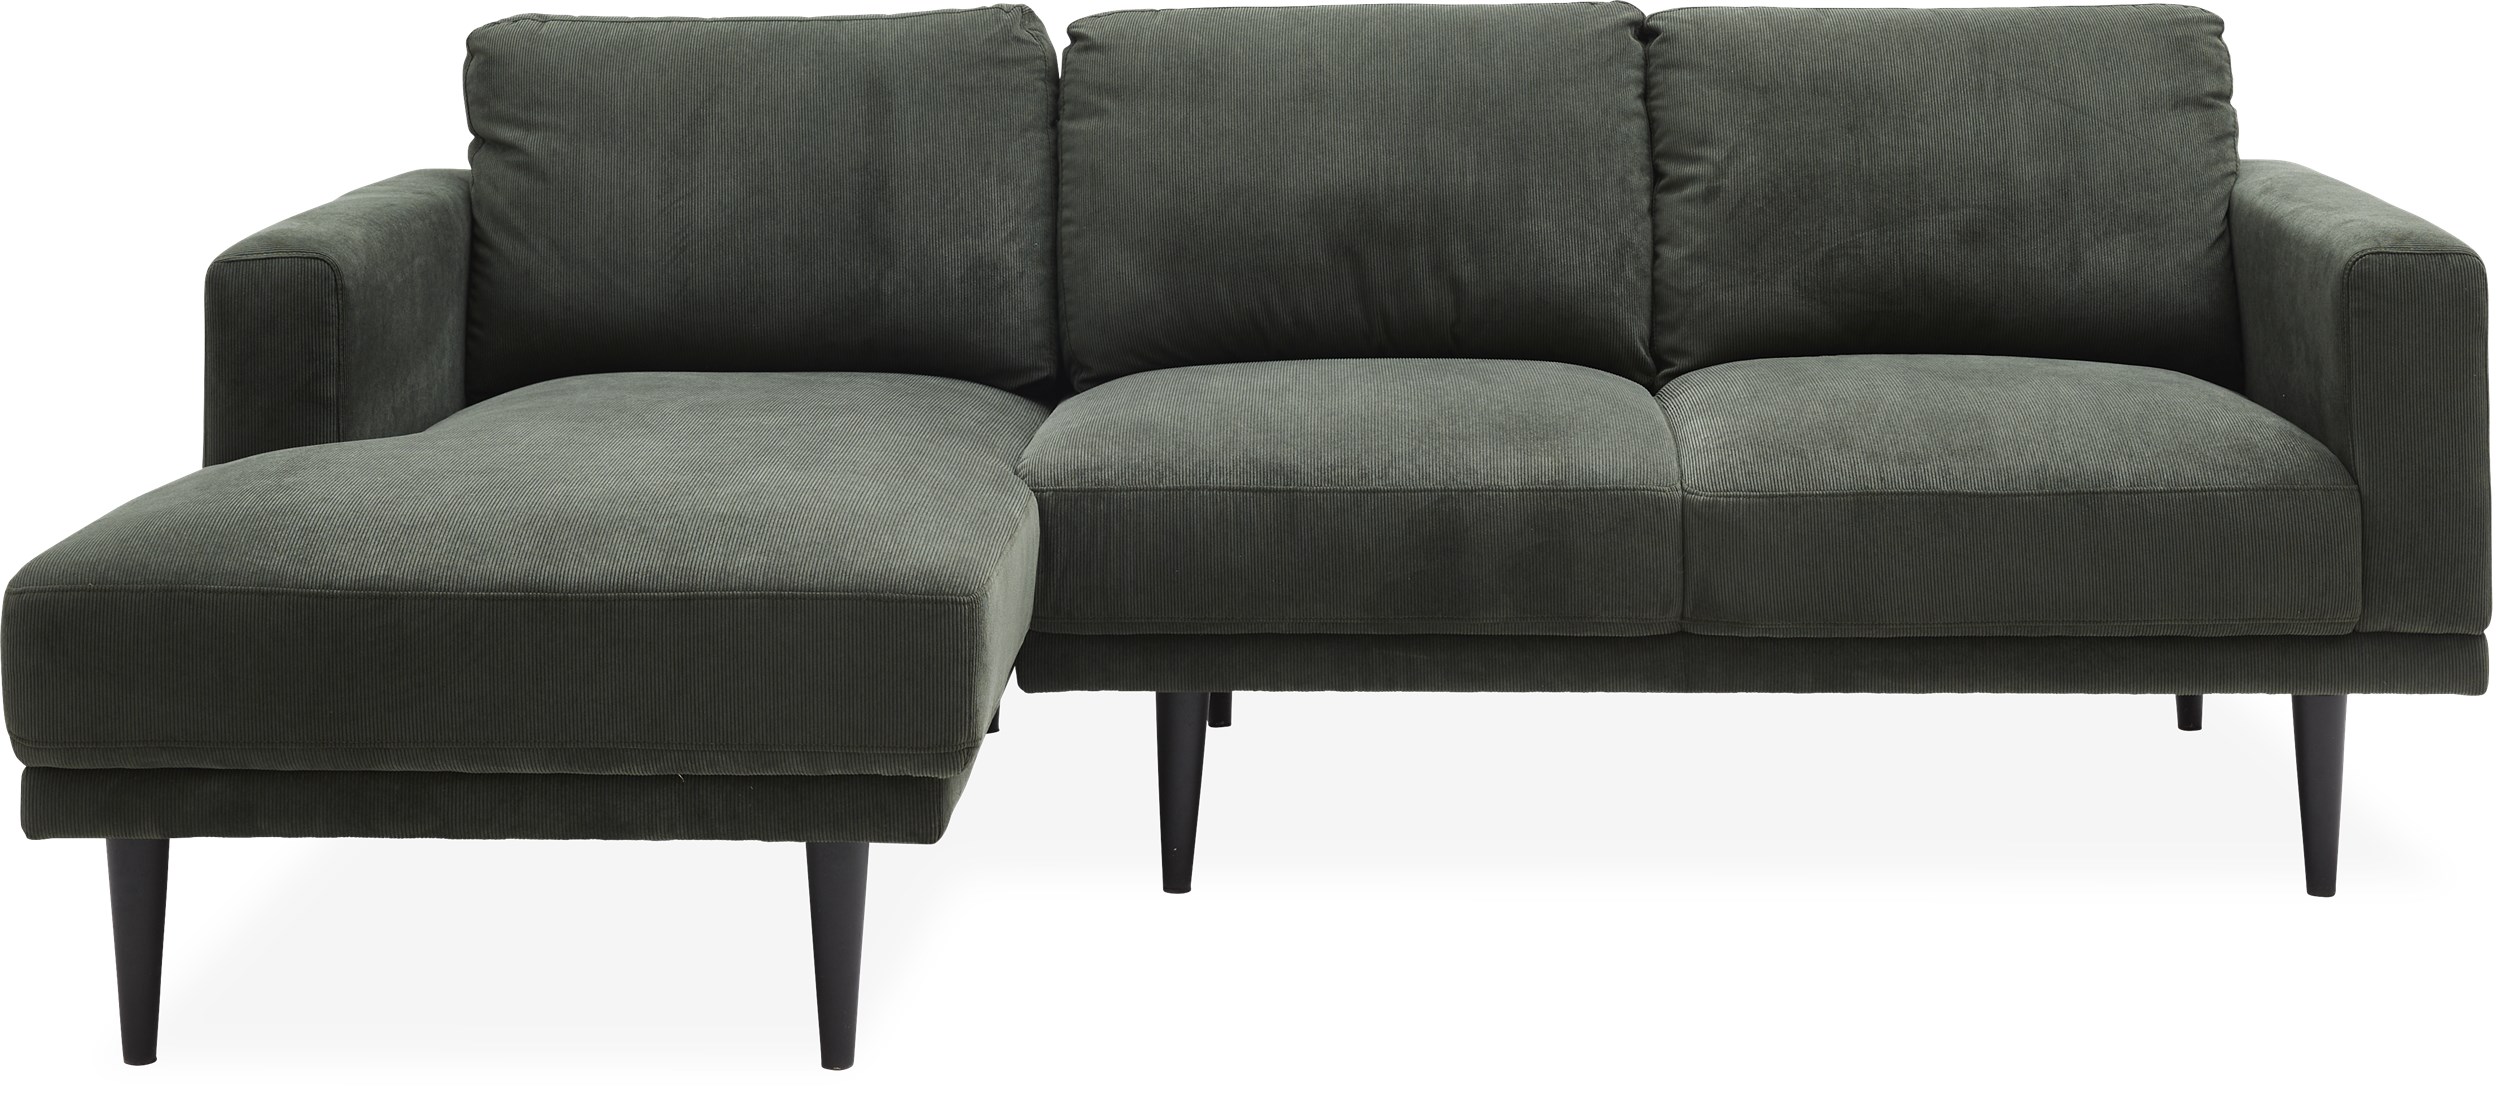 Mexico Sofa med chaiselong - Wave 190 Dark green stof og ben i sortlakeret gummitræ